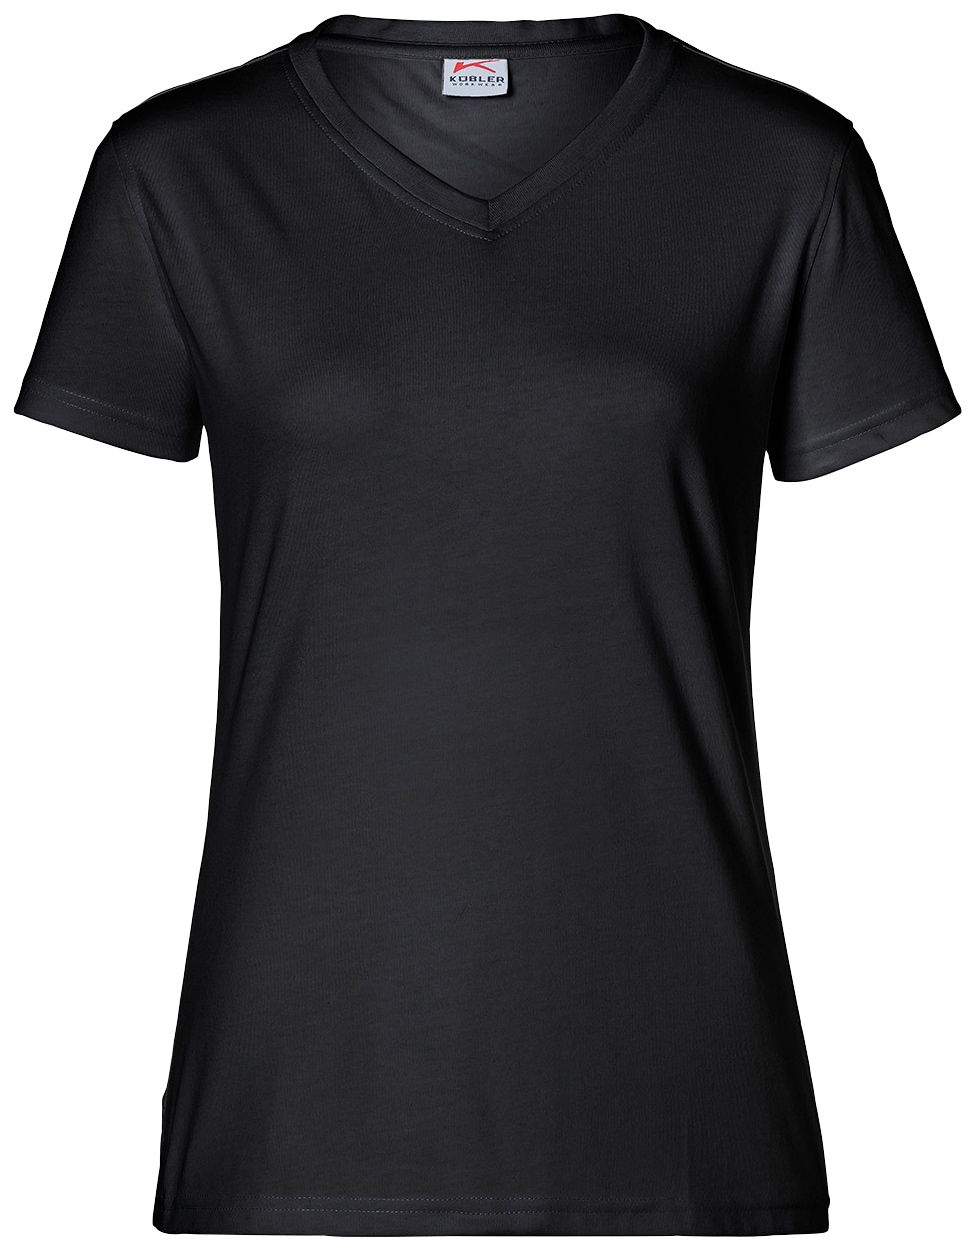 Kübler T-Shirt, für Damen, Größe: - OTTOversand 4XL XS bei